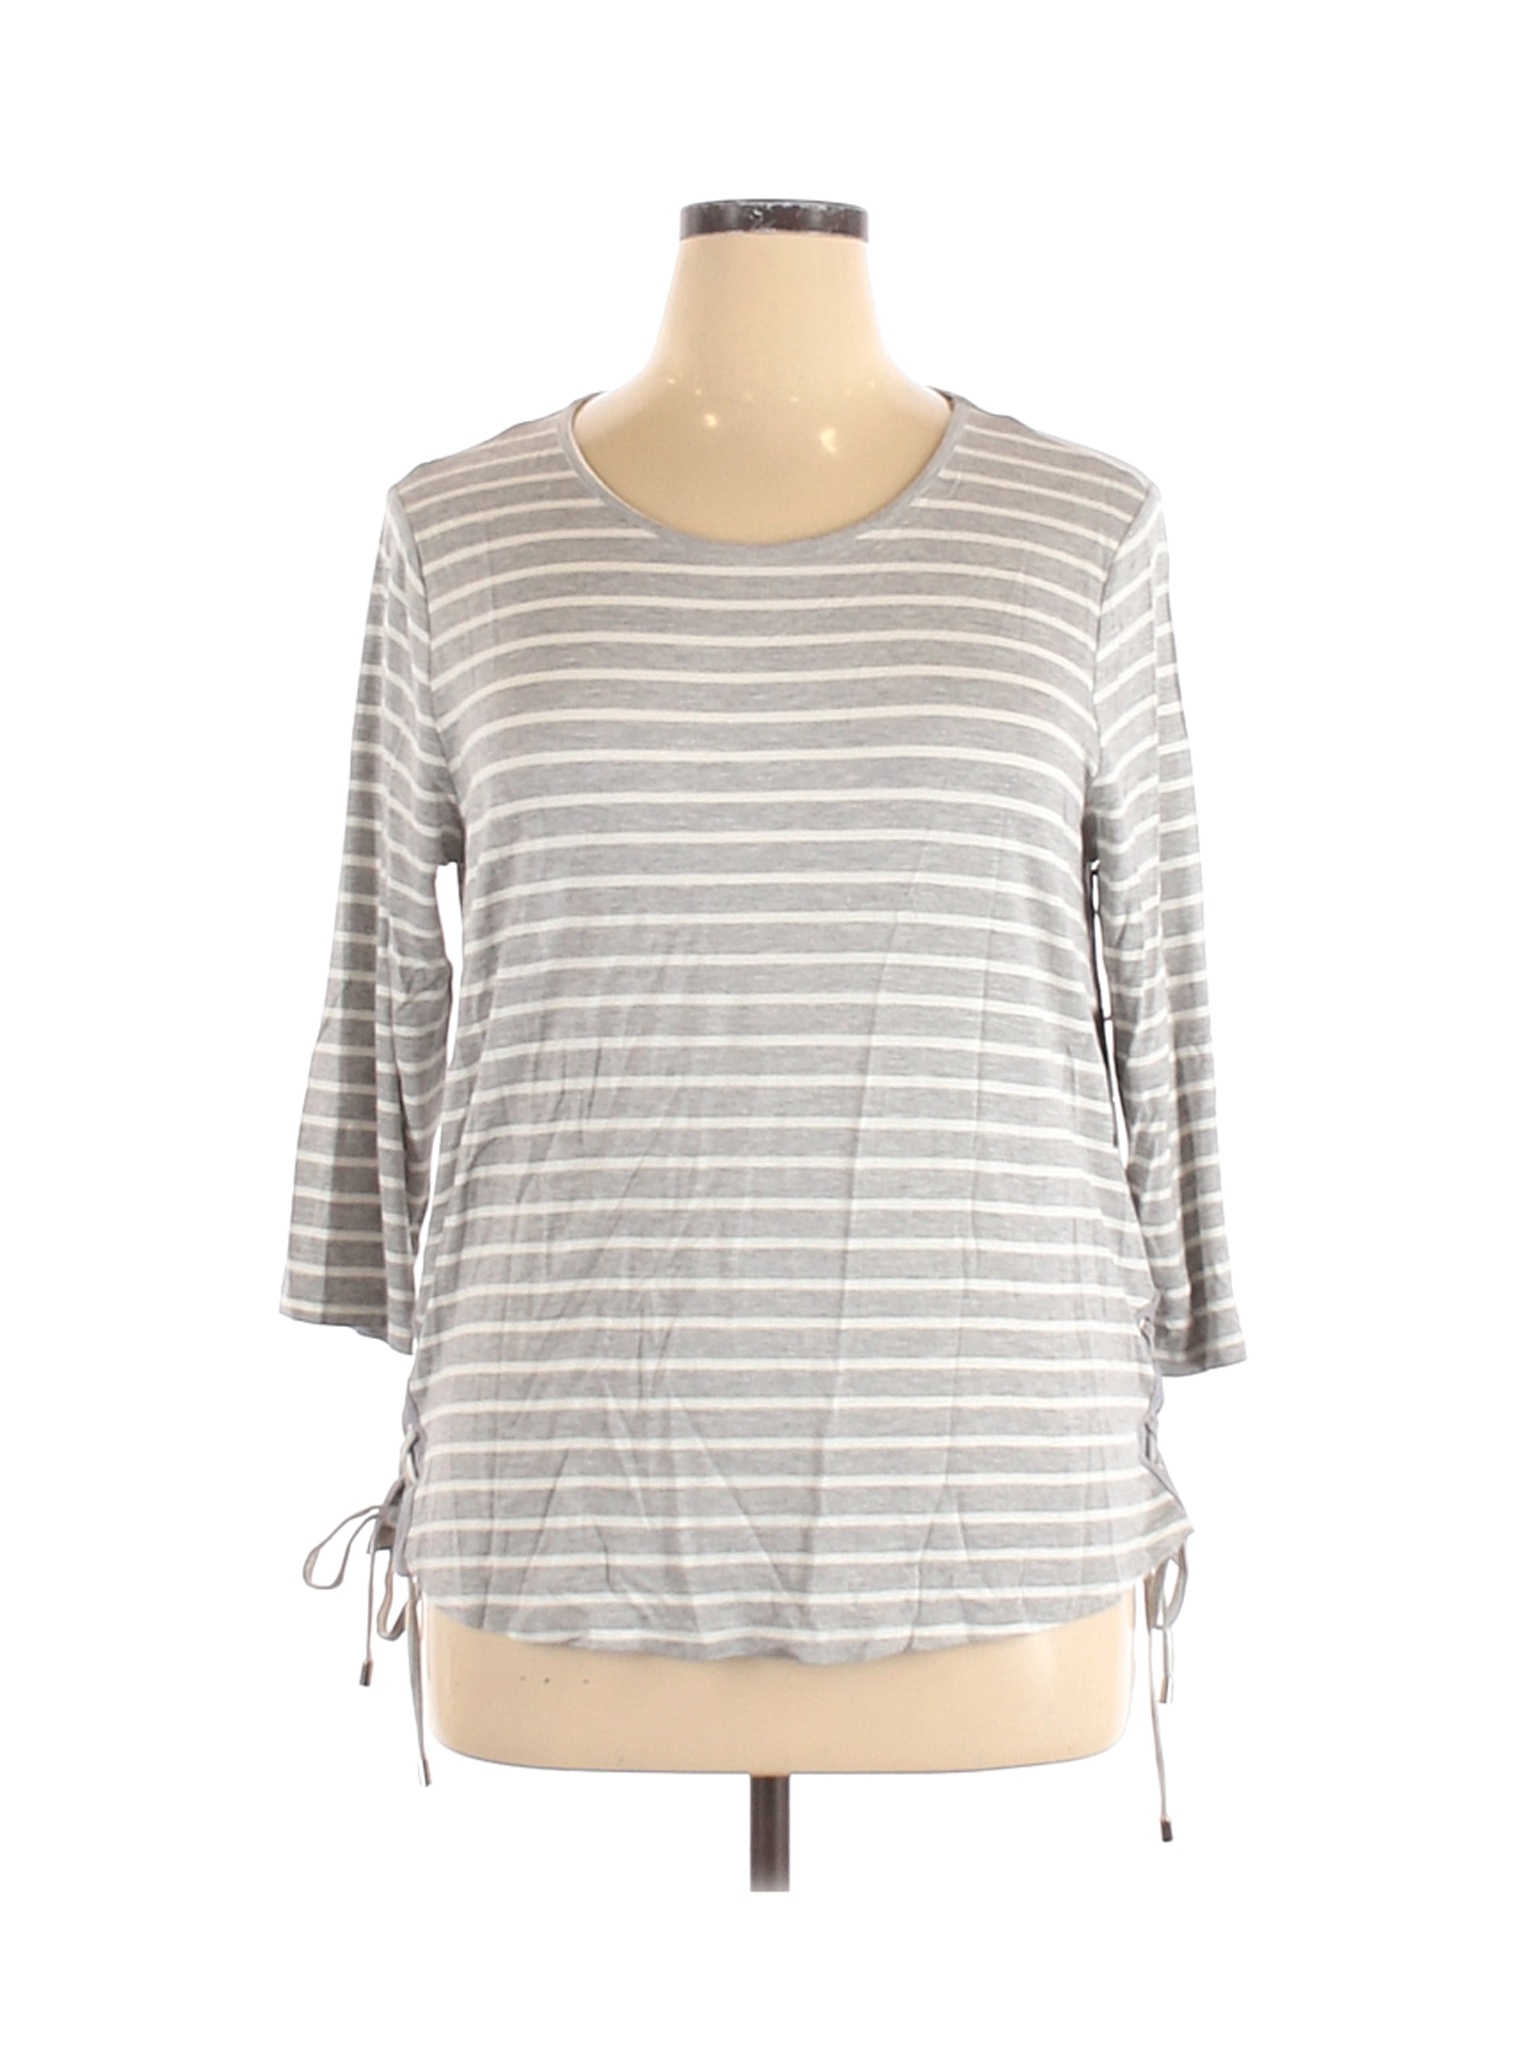 NWT Marled Essentials Women Gray 3/4 Sleeve T-Shirt XL | eBay